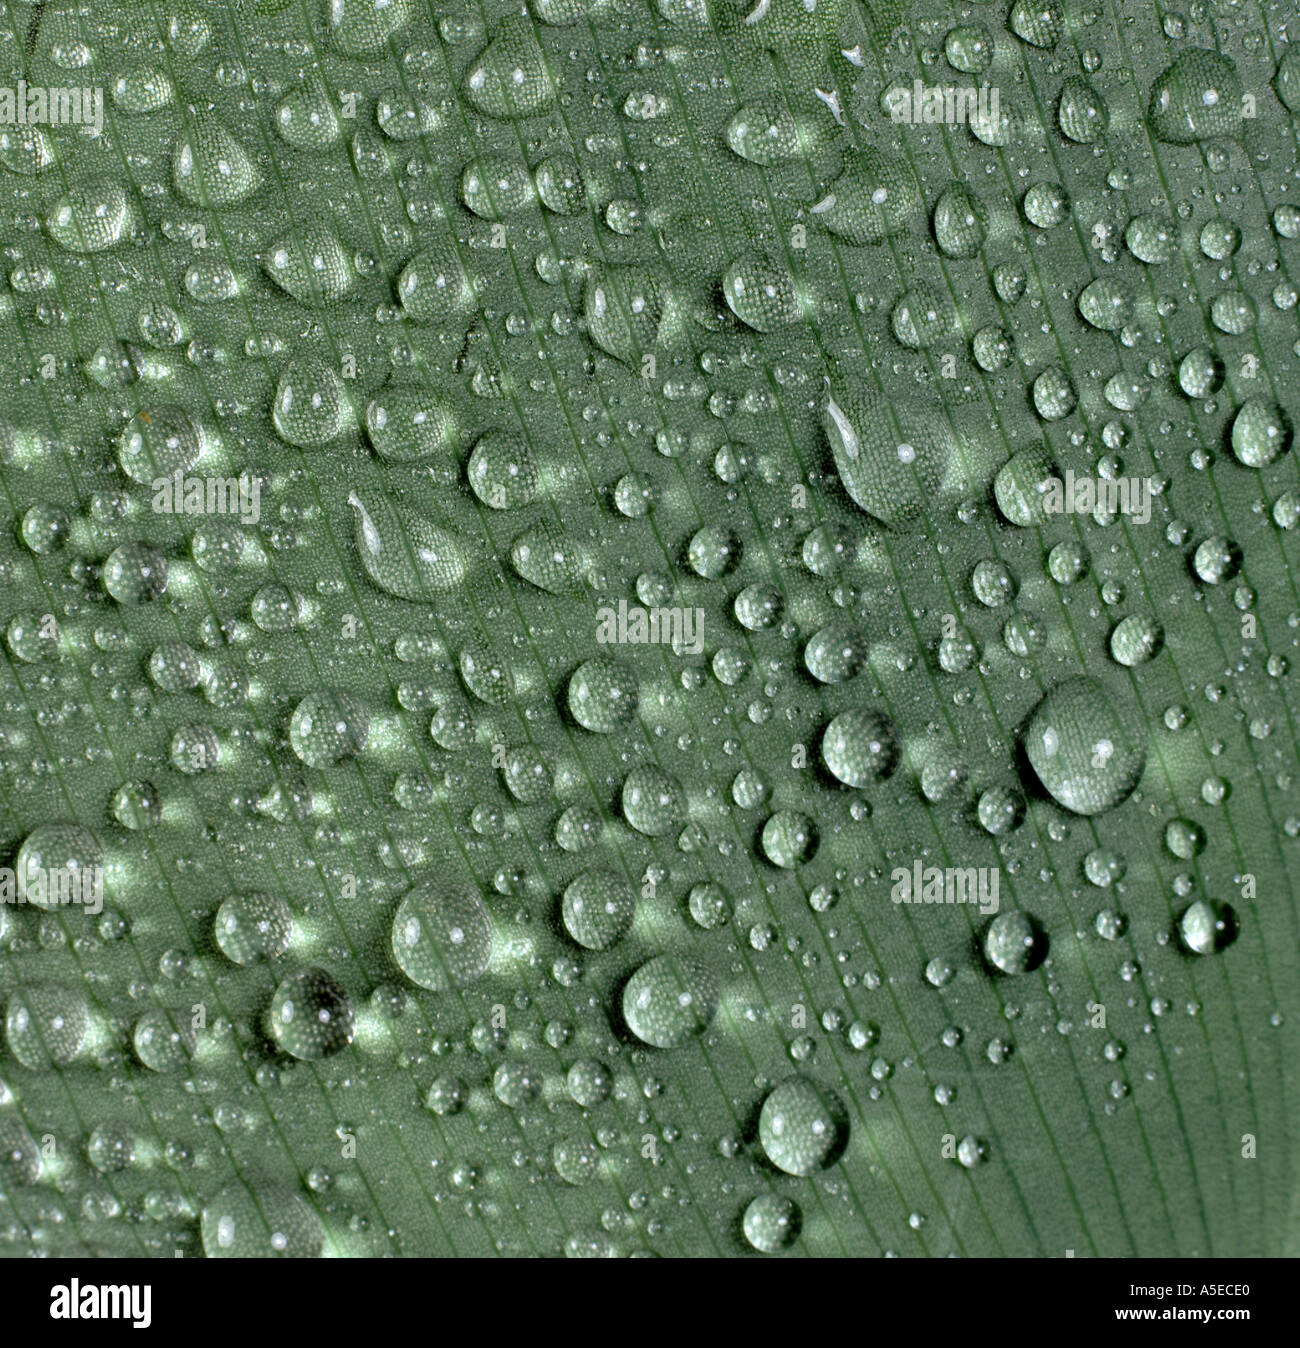 L'eau ou des gouttelettes de pluie sur une feuille de Canna lily Banque D'Images